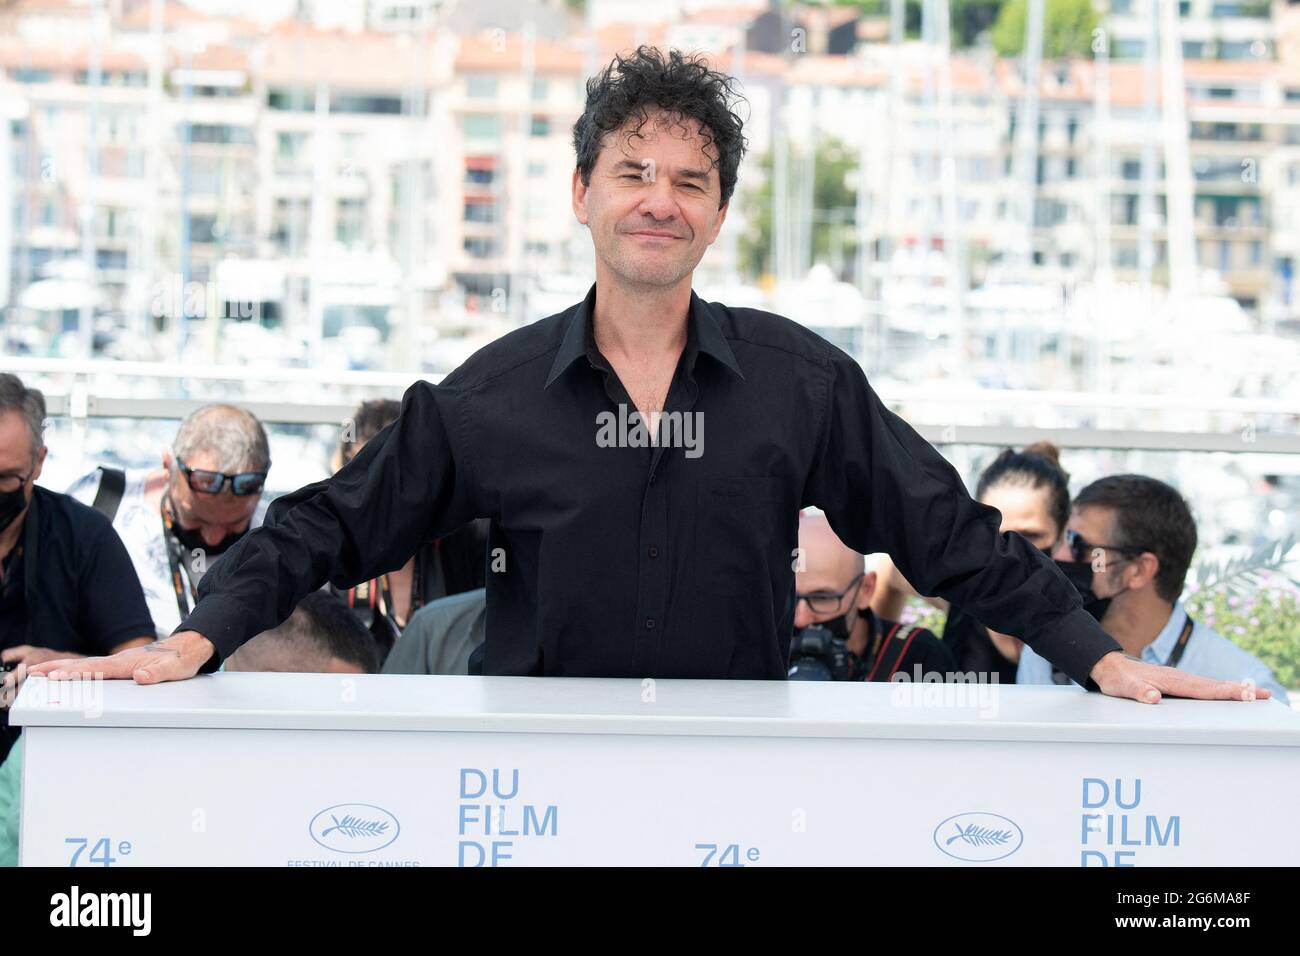 Regisseur Mark Cousins besucht die Filmgeschichte: Eine neue Generation beim 74. Jährlichen Filmfestival in Cannes am 07. Juli 2021 in Cannes, Frankreich. Foto von David Niviere/ABACAPRESS.COM Stockfoto